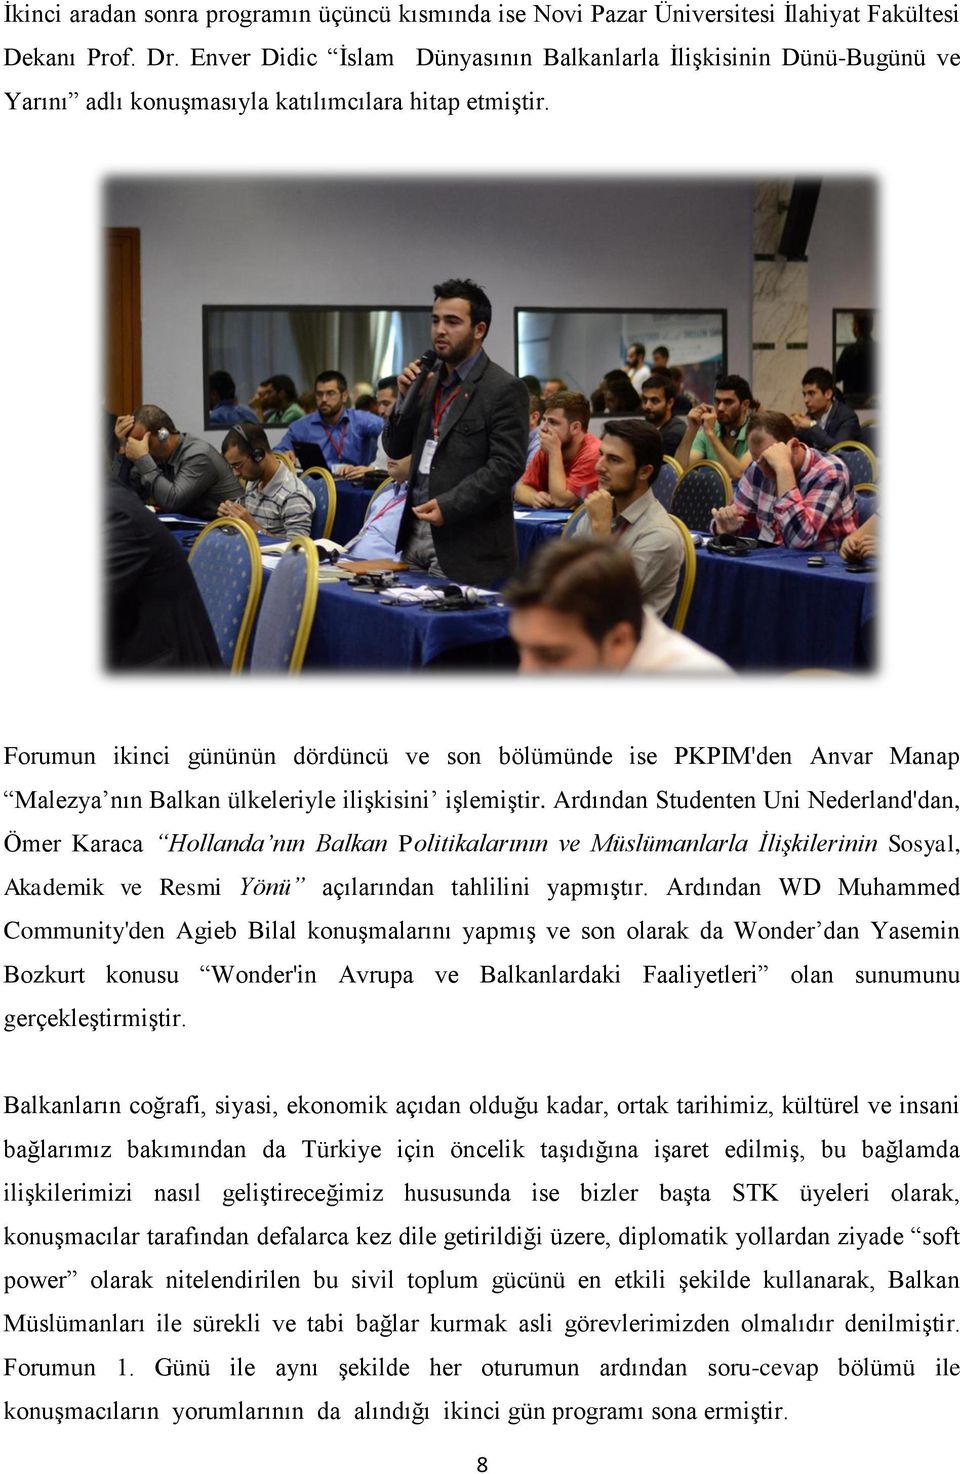 Forumun ikinci gününün dördüncü ve son bölümünde ise PKPIM'den Anvar Manap Malezya nın Balkan ülkeleriyle ilişkisini işlemiştir.